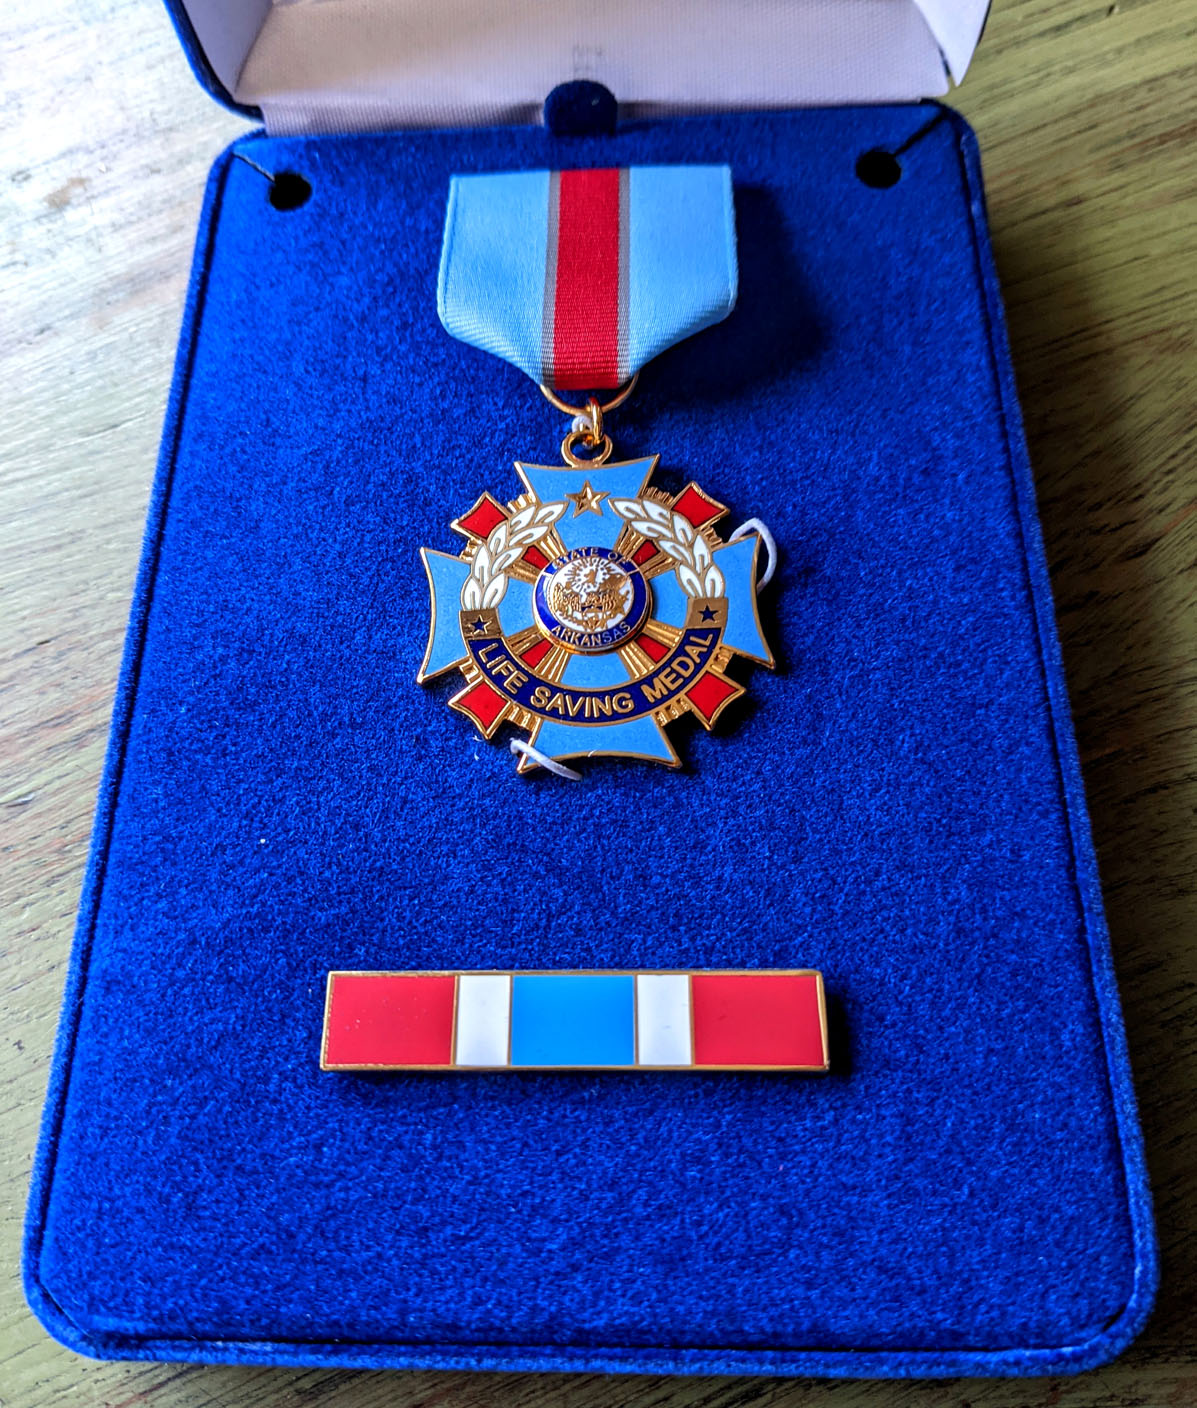 Louisiana Game Warden Life Saving Medal